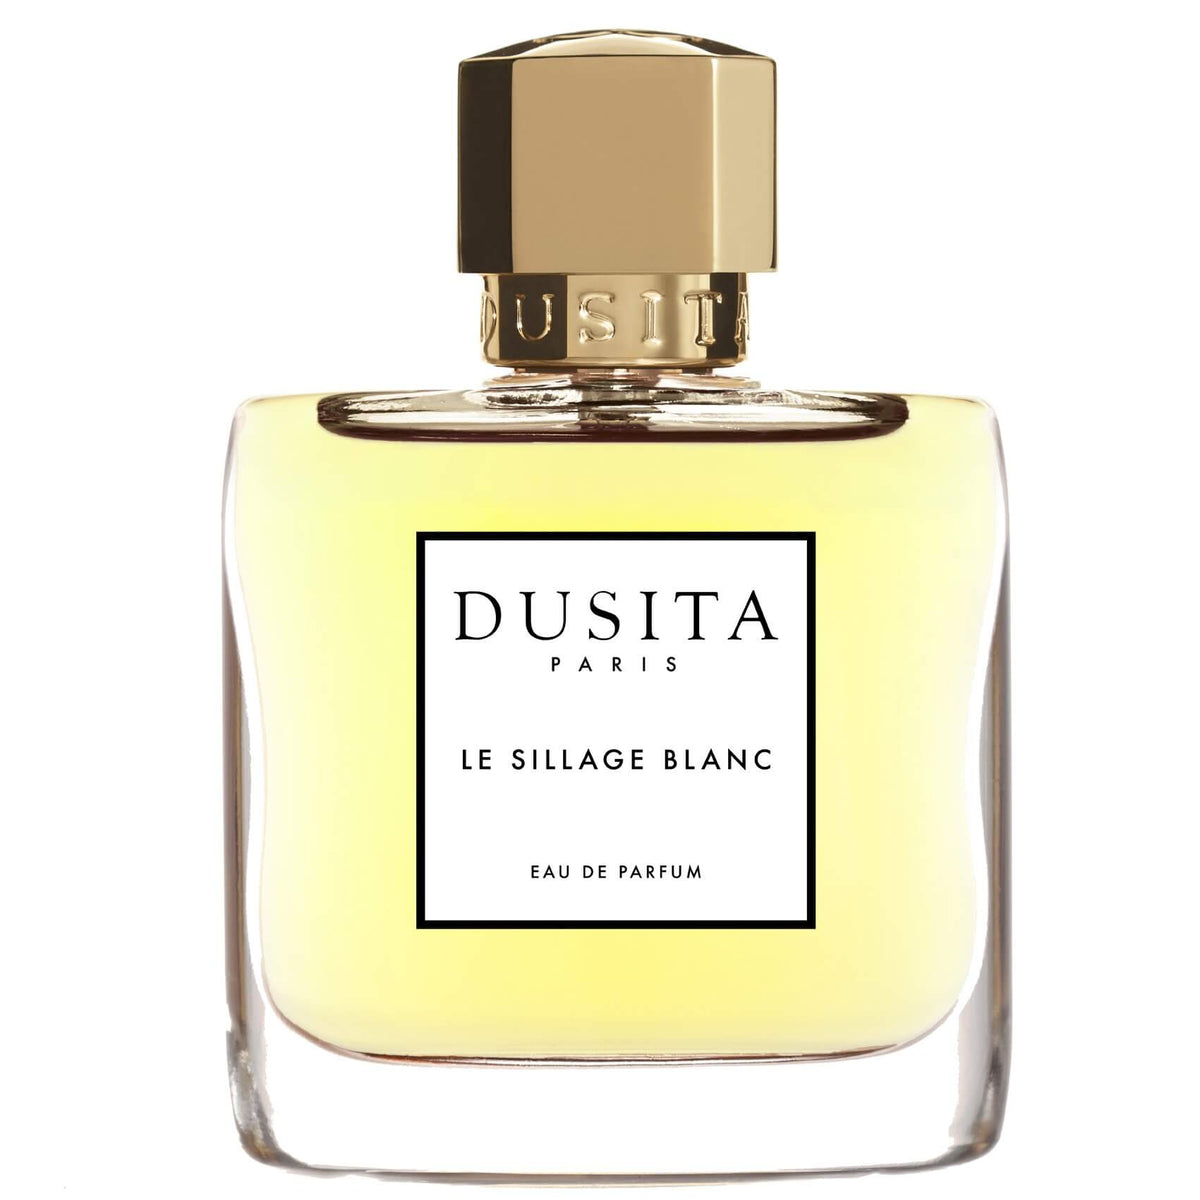 Le Sillage Blanc by Dusita at Indigo Perfumery